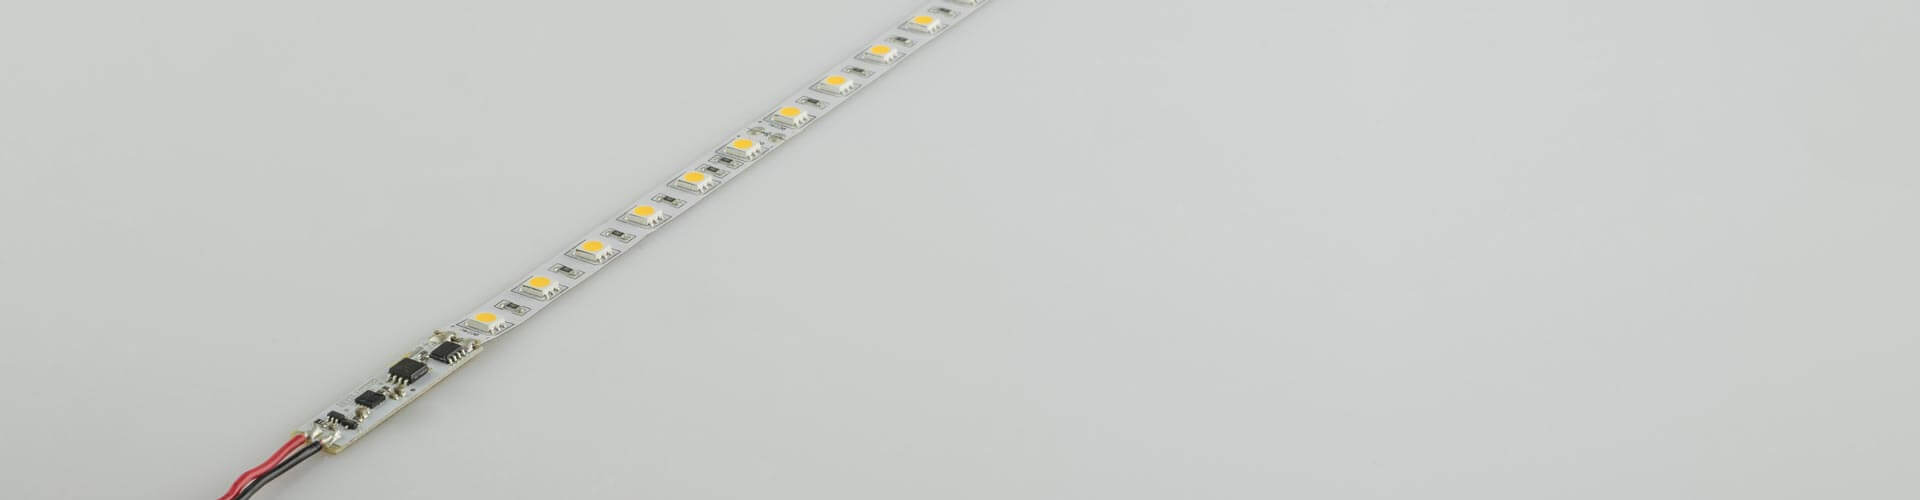 LED Streifen mit Schalter Bild 1